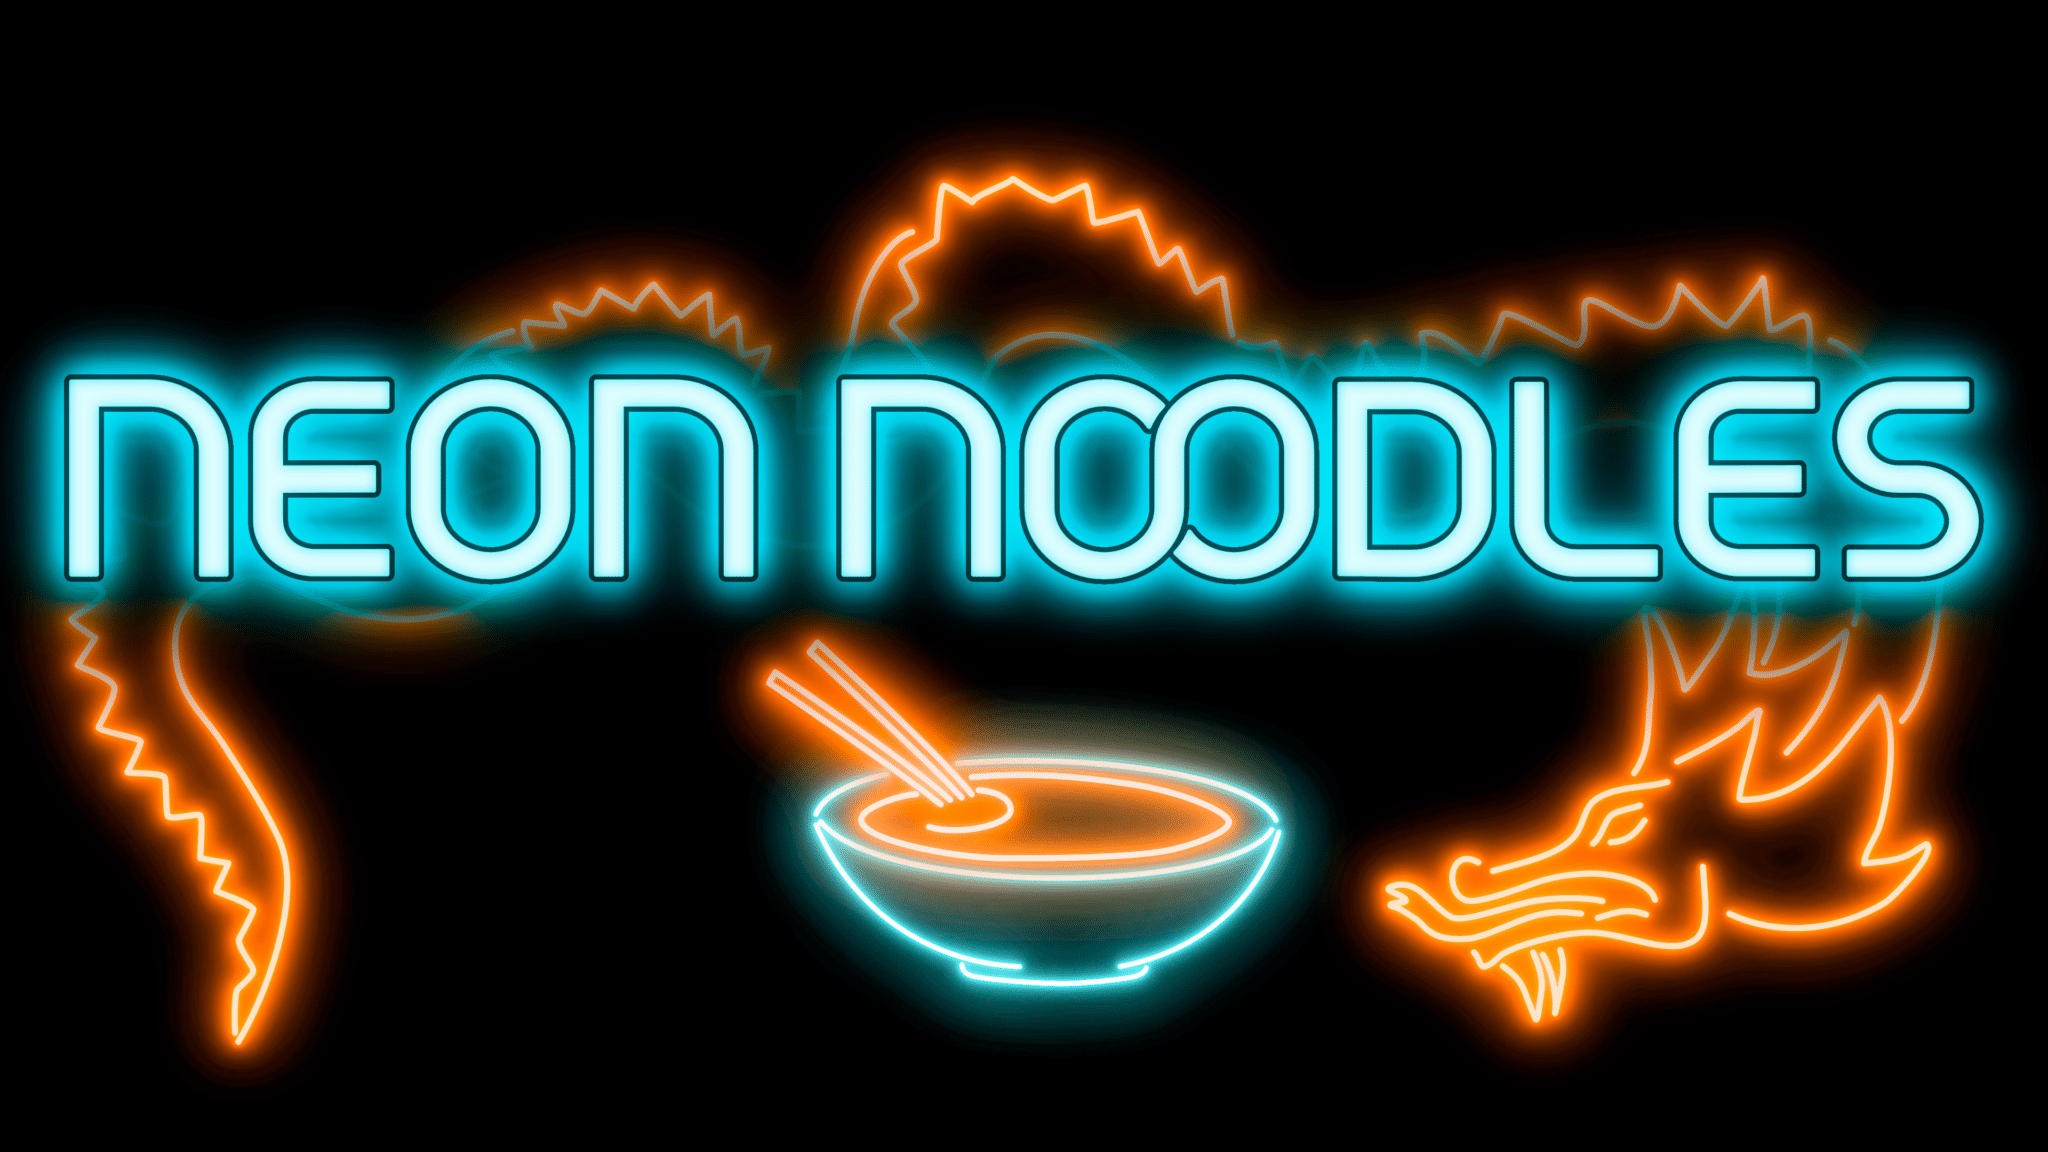 neon_noddles